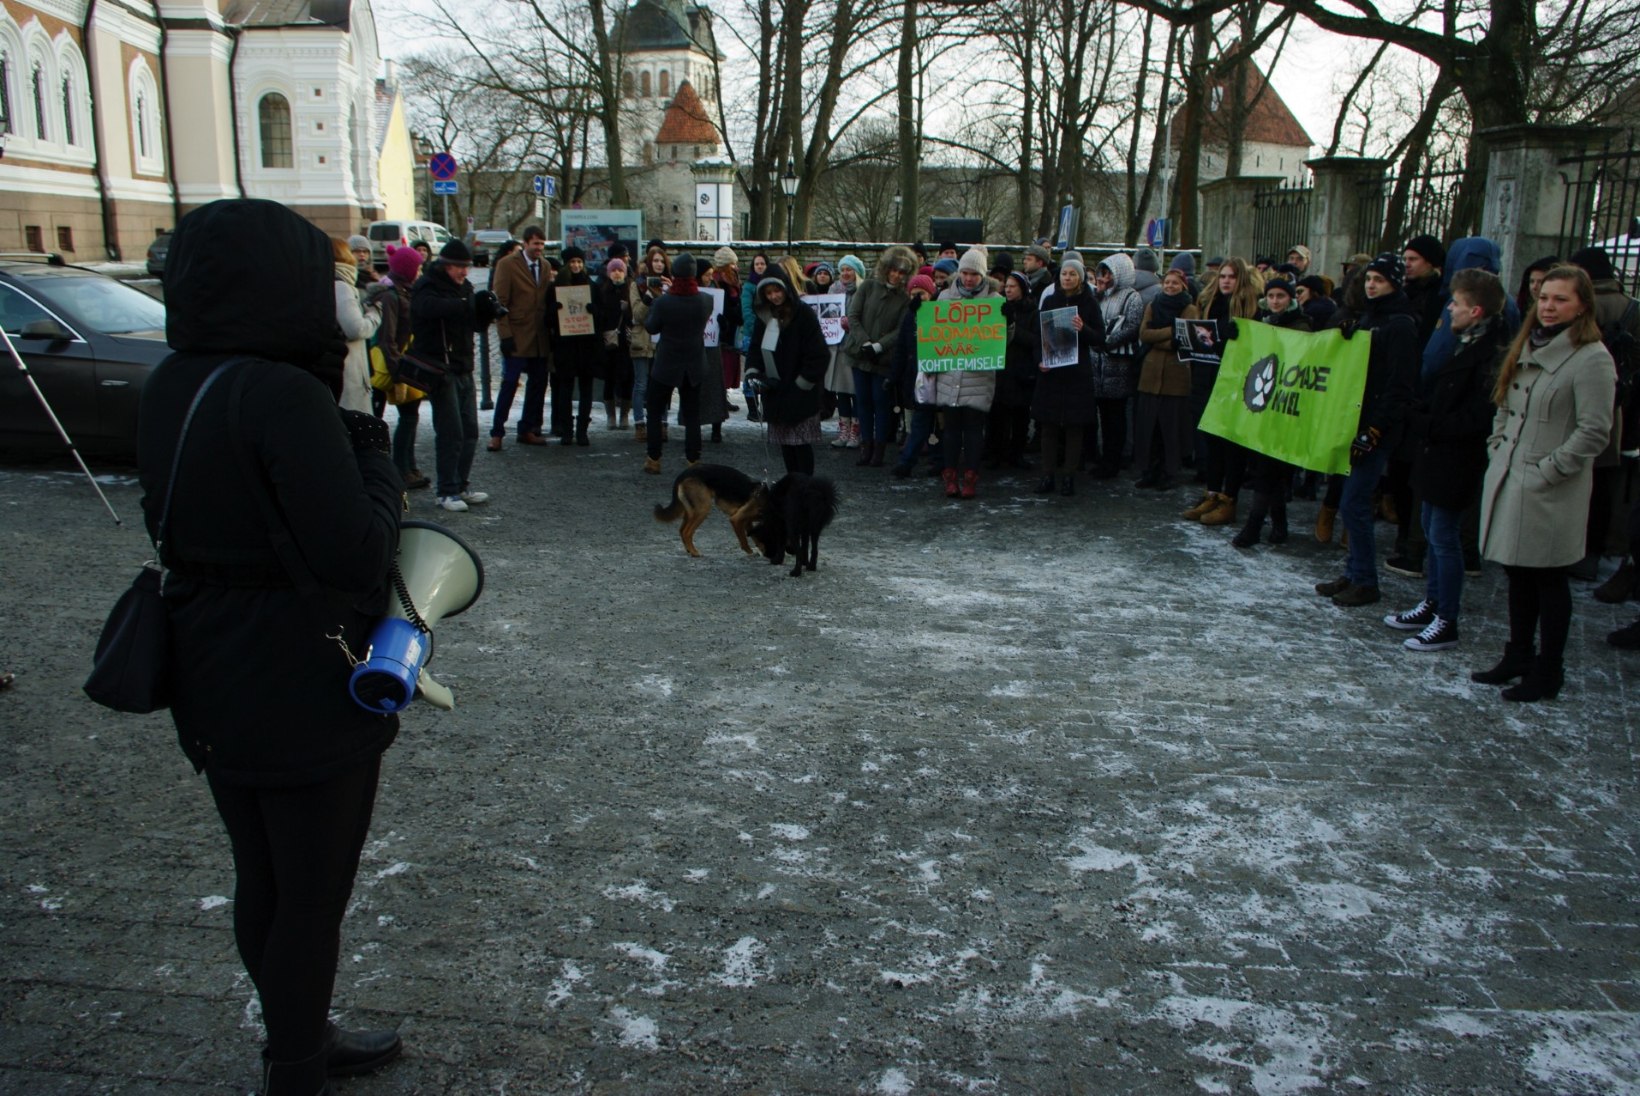 GALERII | Tänahommikusel karusloomafarmide vastasel meeleavaldusel osales üle 100 inimese